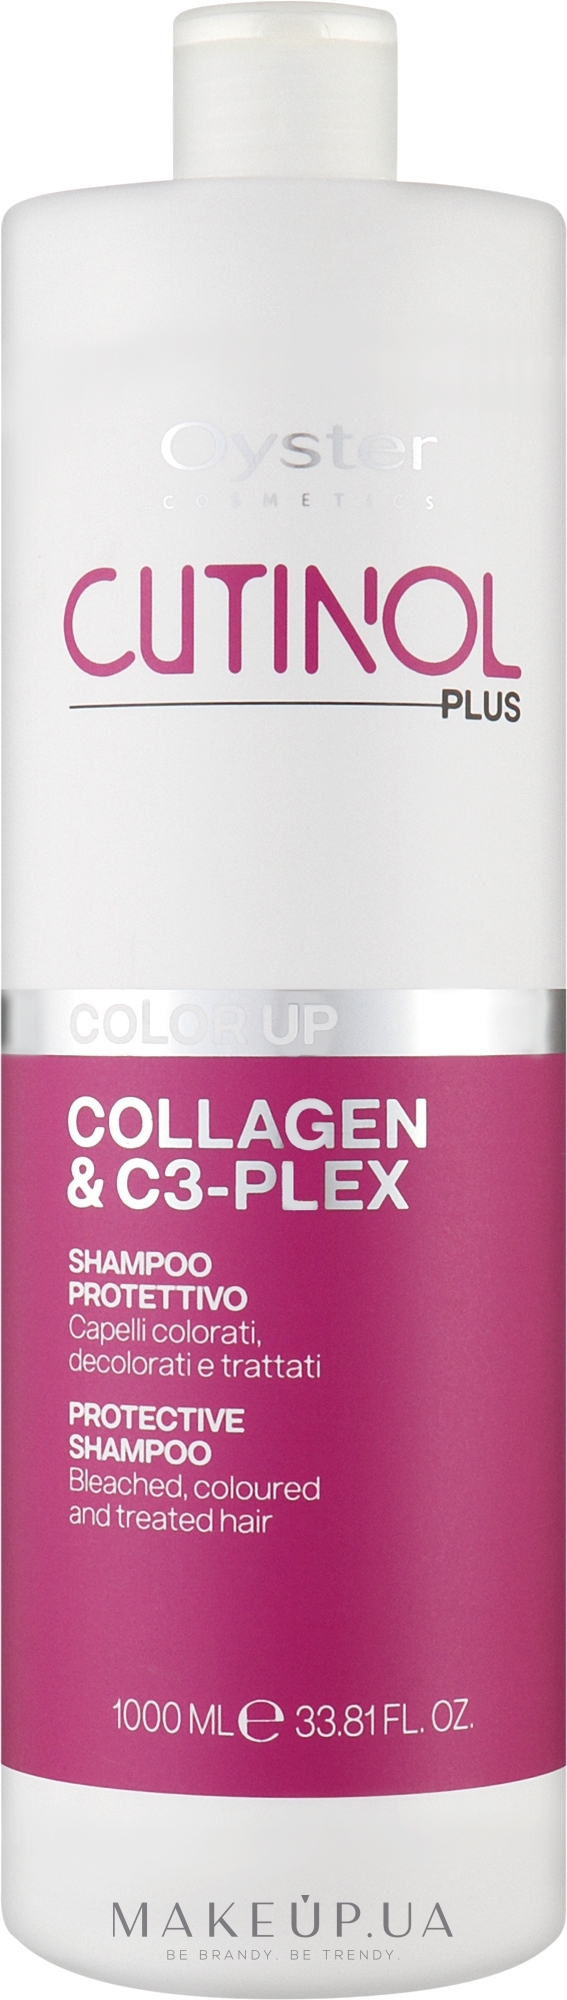 Шампунь для фарбованого волосся - Oyster Cutinol Plus Collagen & C3-Plex Color Up Protective Shampoo — фото 1000ml